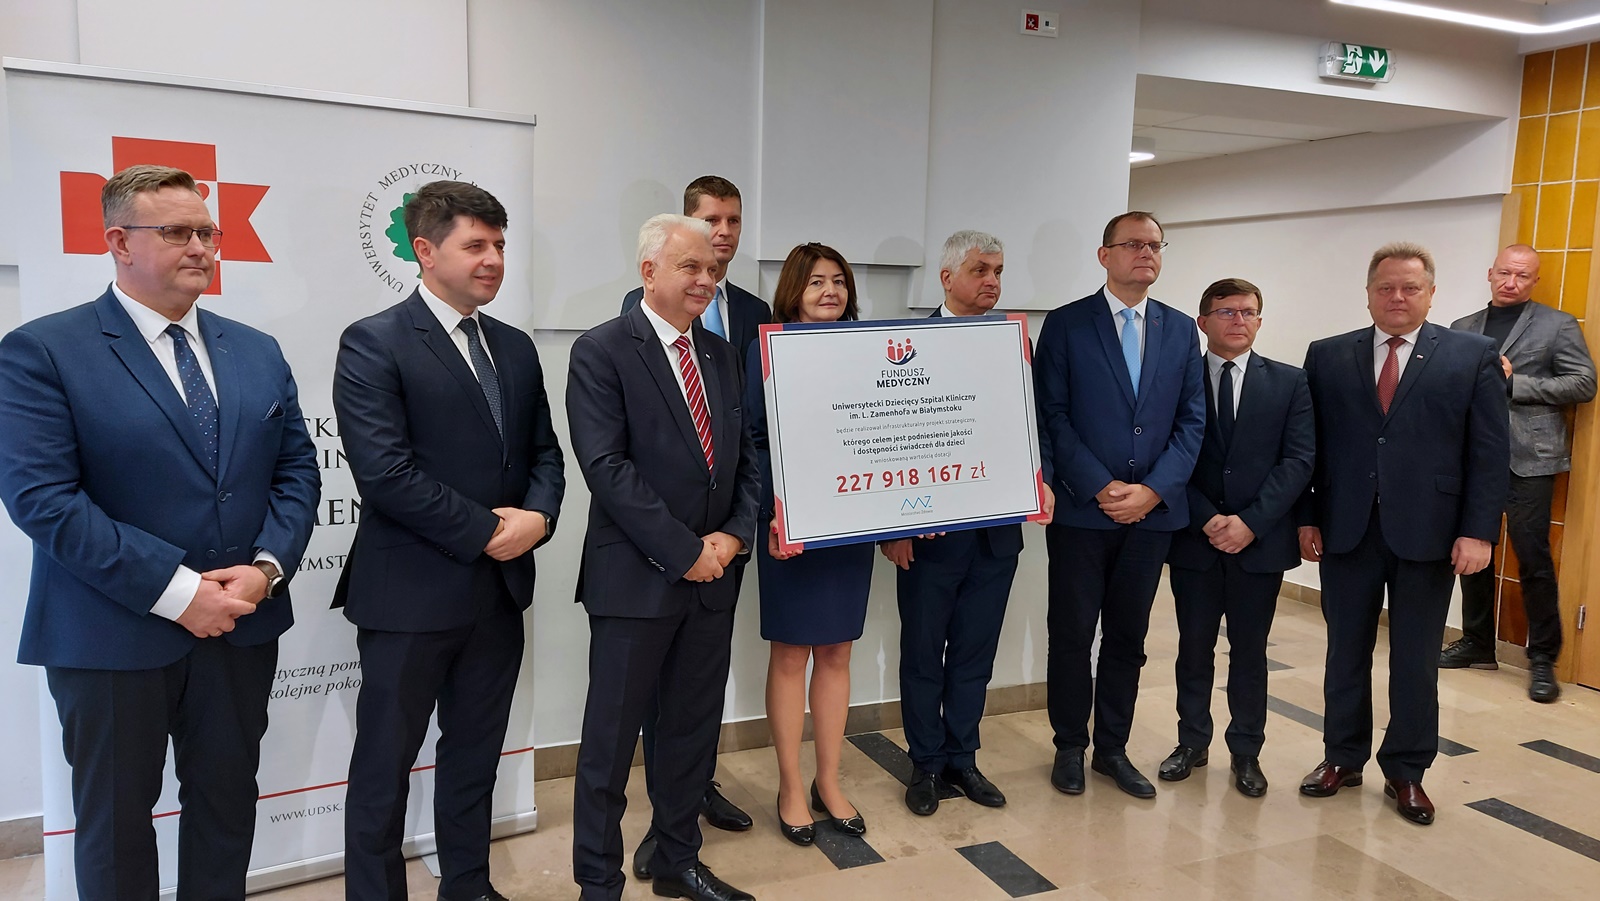 Projekt UDSK otrzymał dofinansowanie w kwocie 228 mln zł.